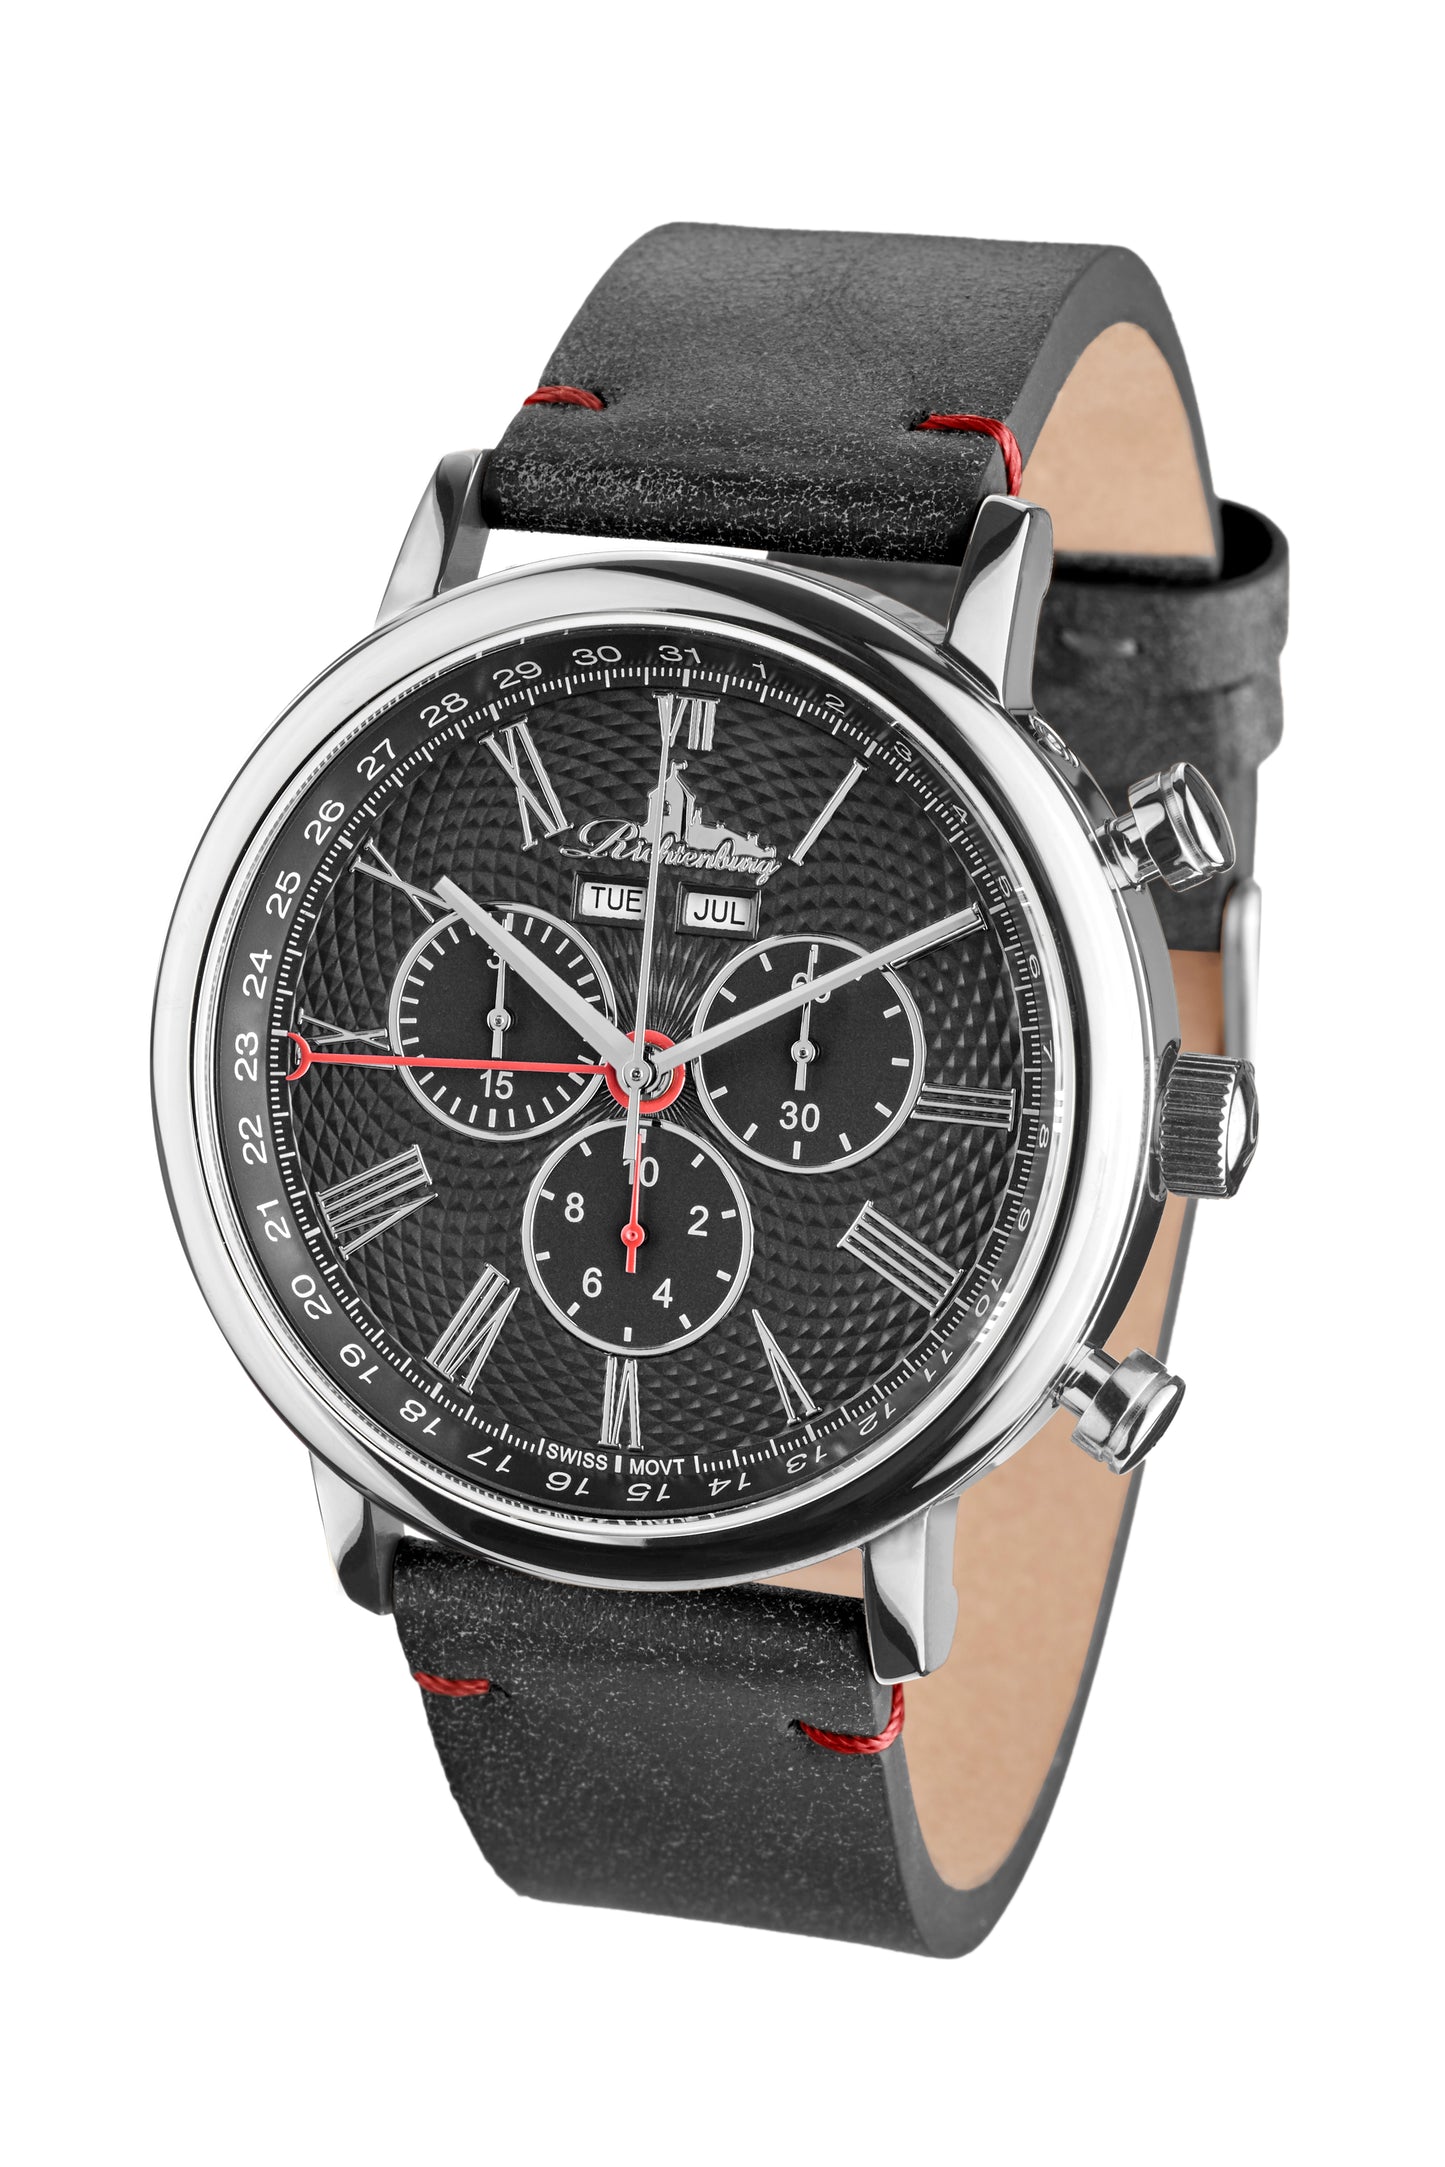 Automatic watches — Burbank — Richtenburg — steel black